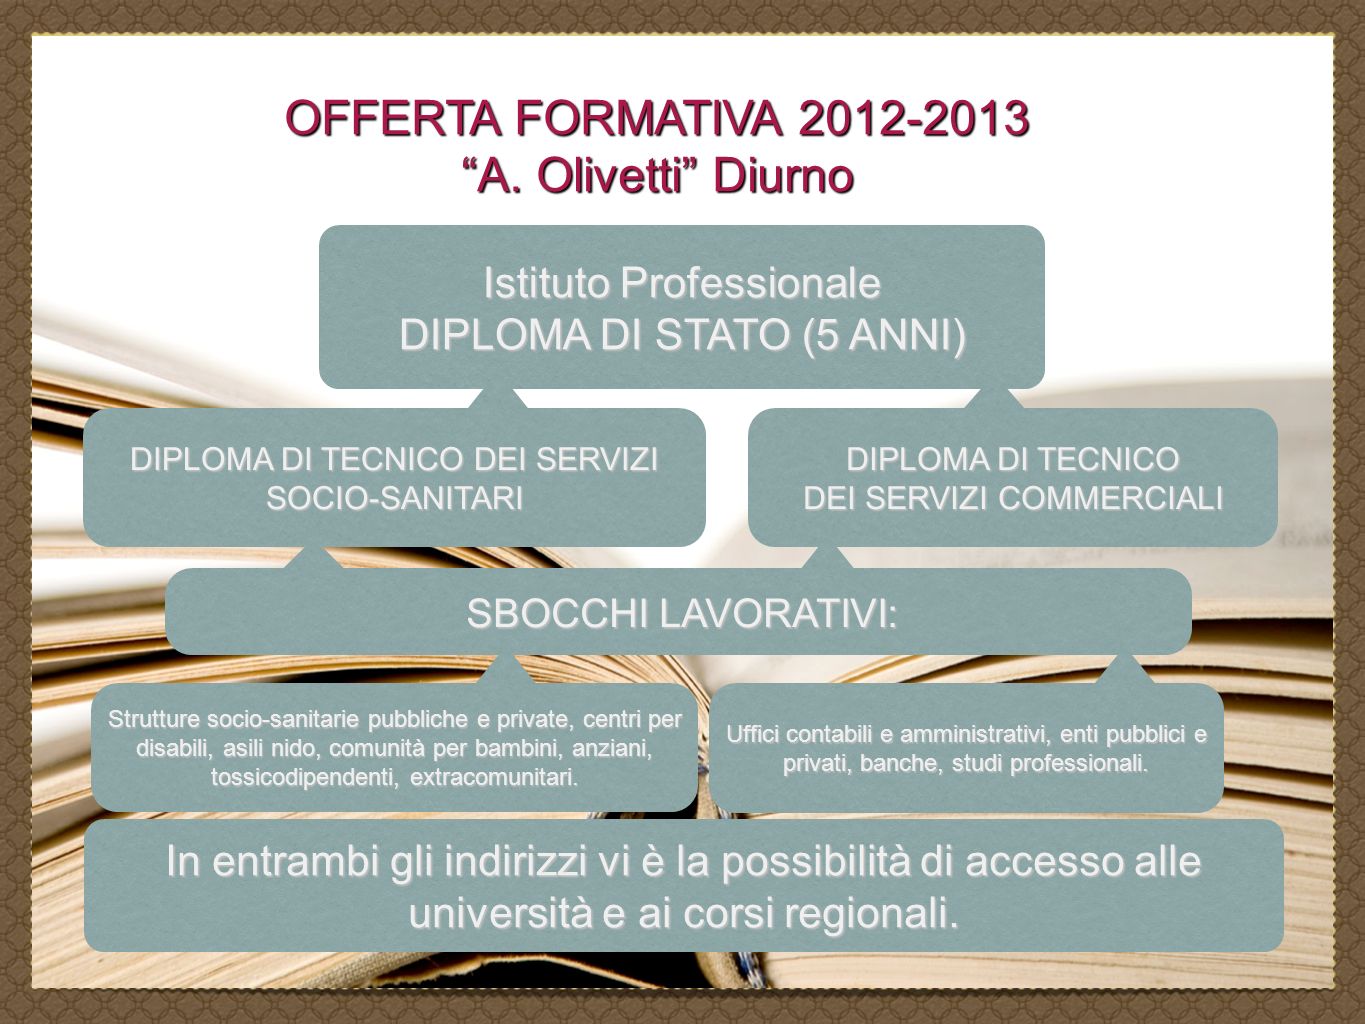 OFFERTA FORMATIVA A. Olivetti Diurno